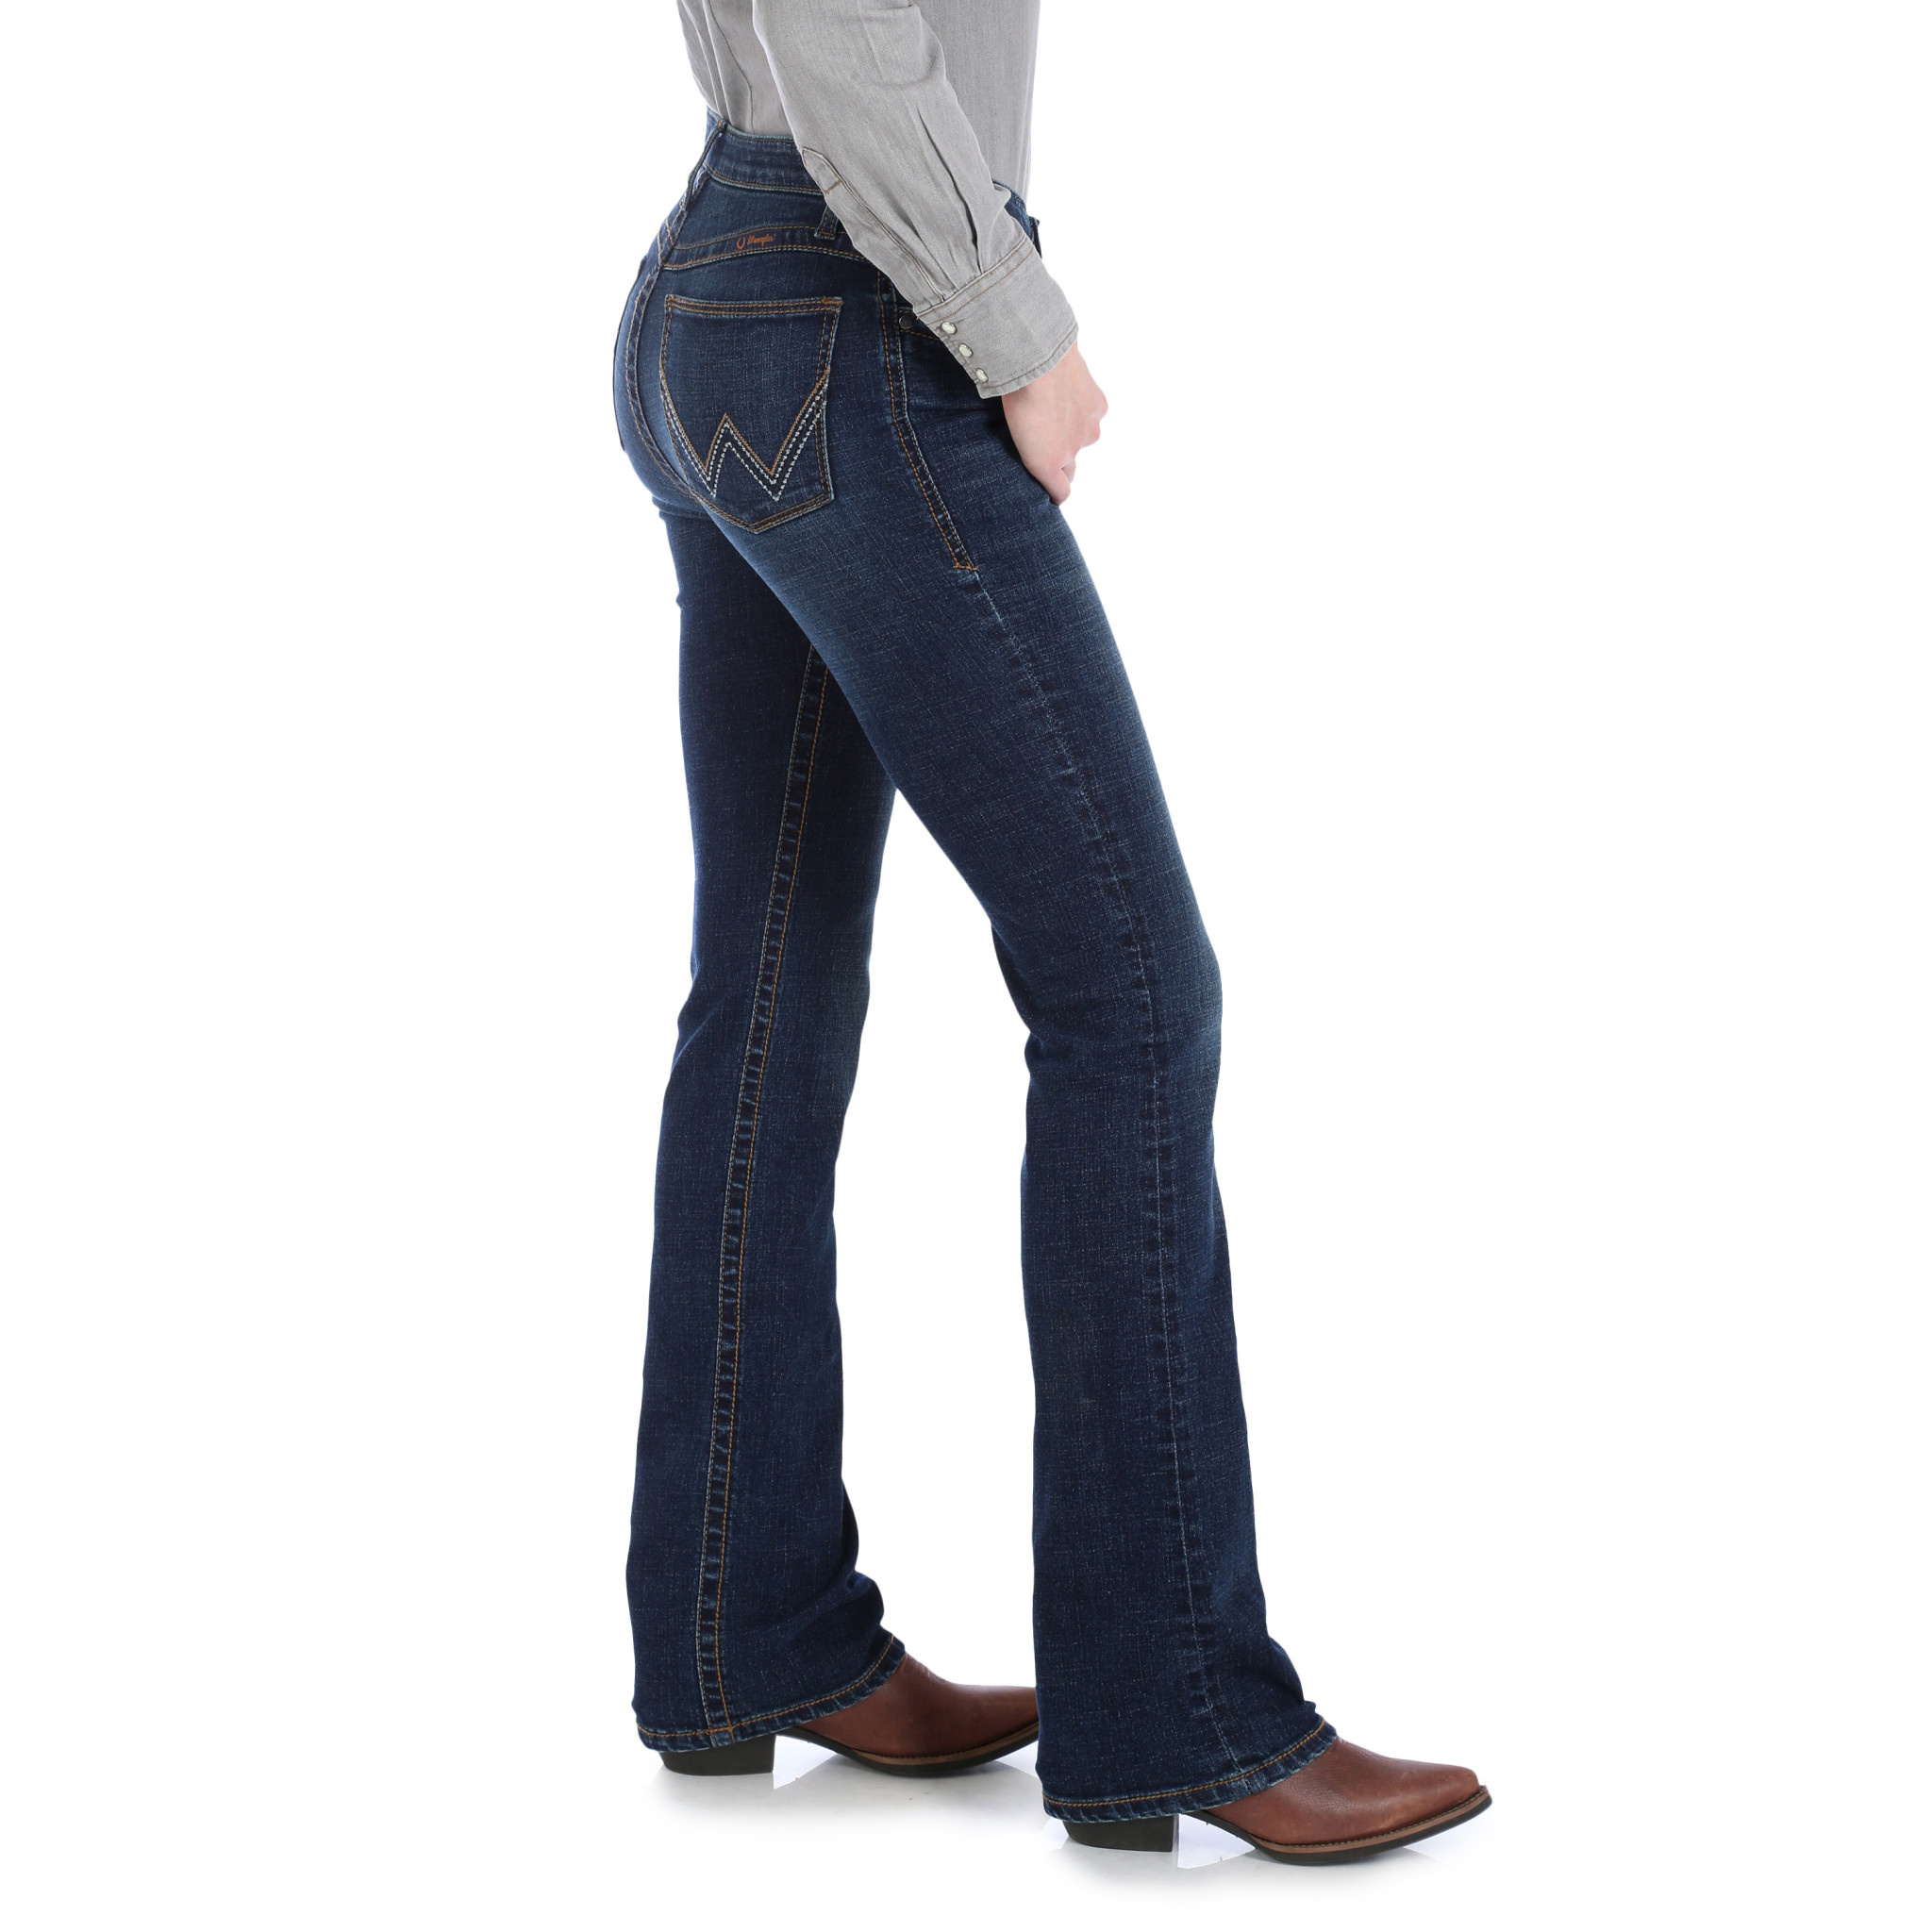 wrangler willow jeans